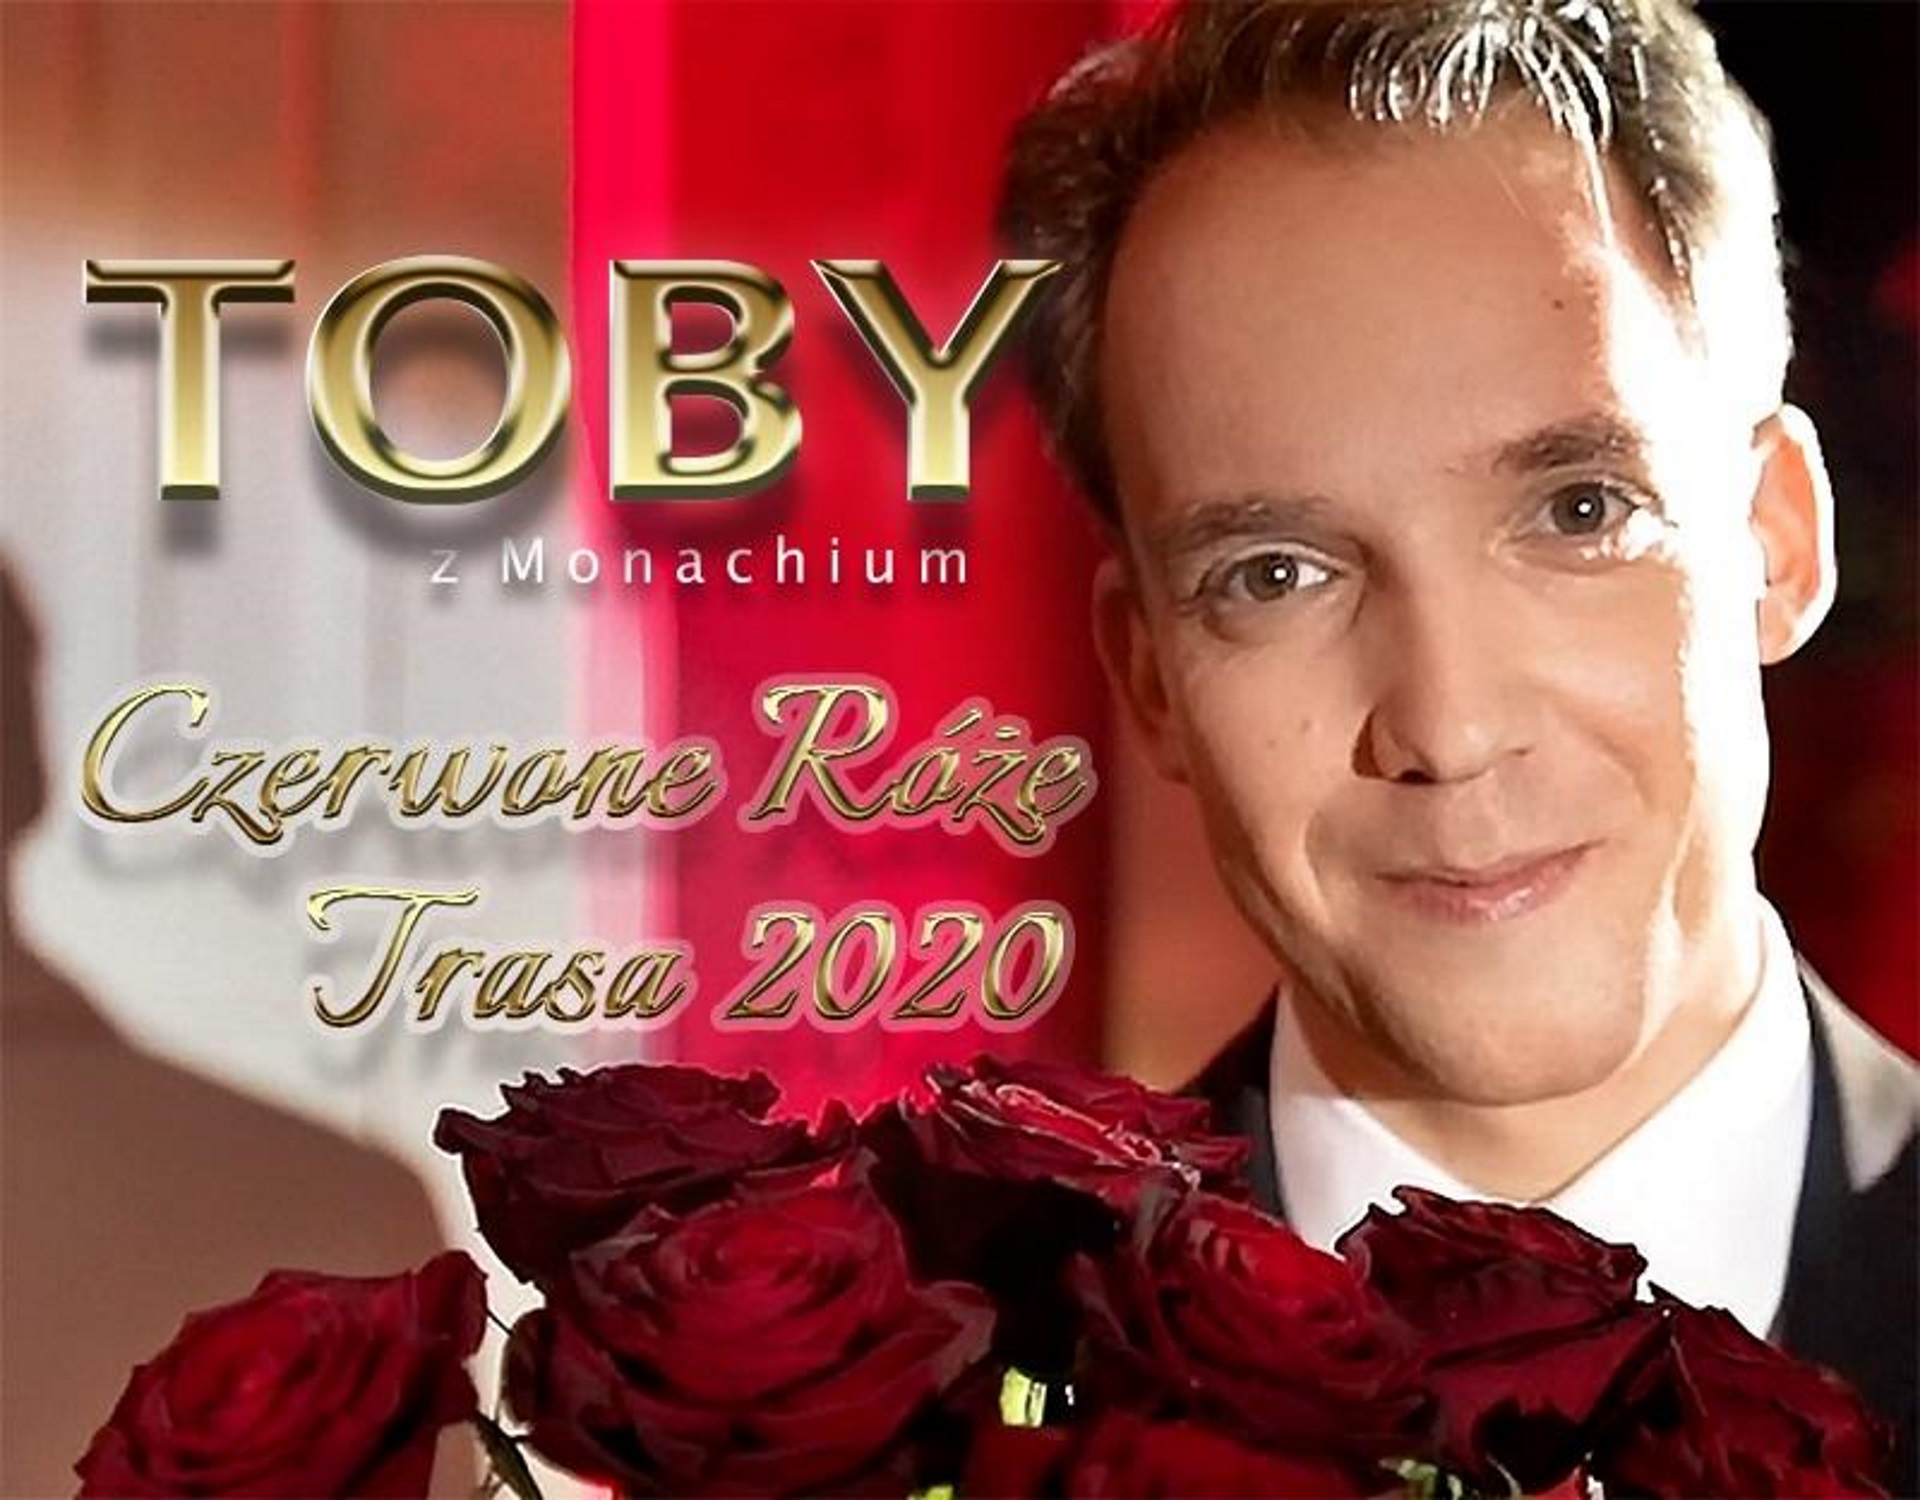 Zdjęcie - plakat na którym jest widoczny artysta - piosenkarza Tobi, trzymający bukiet czerwonych róż.    